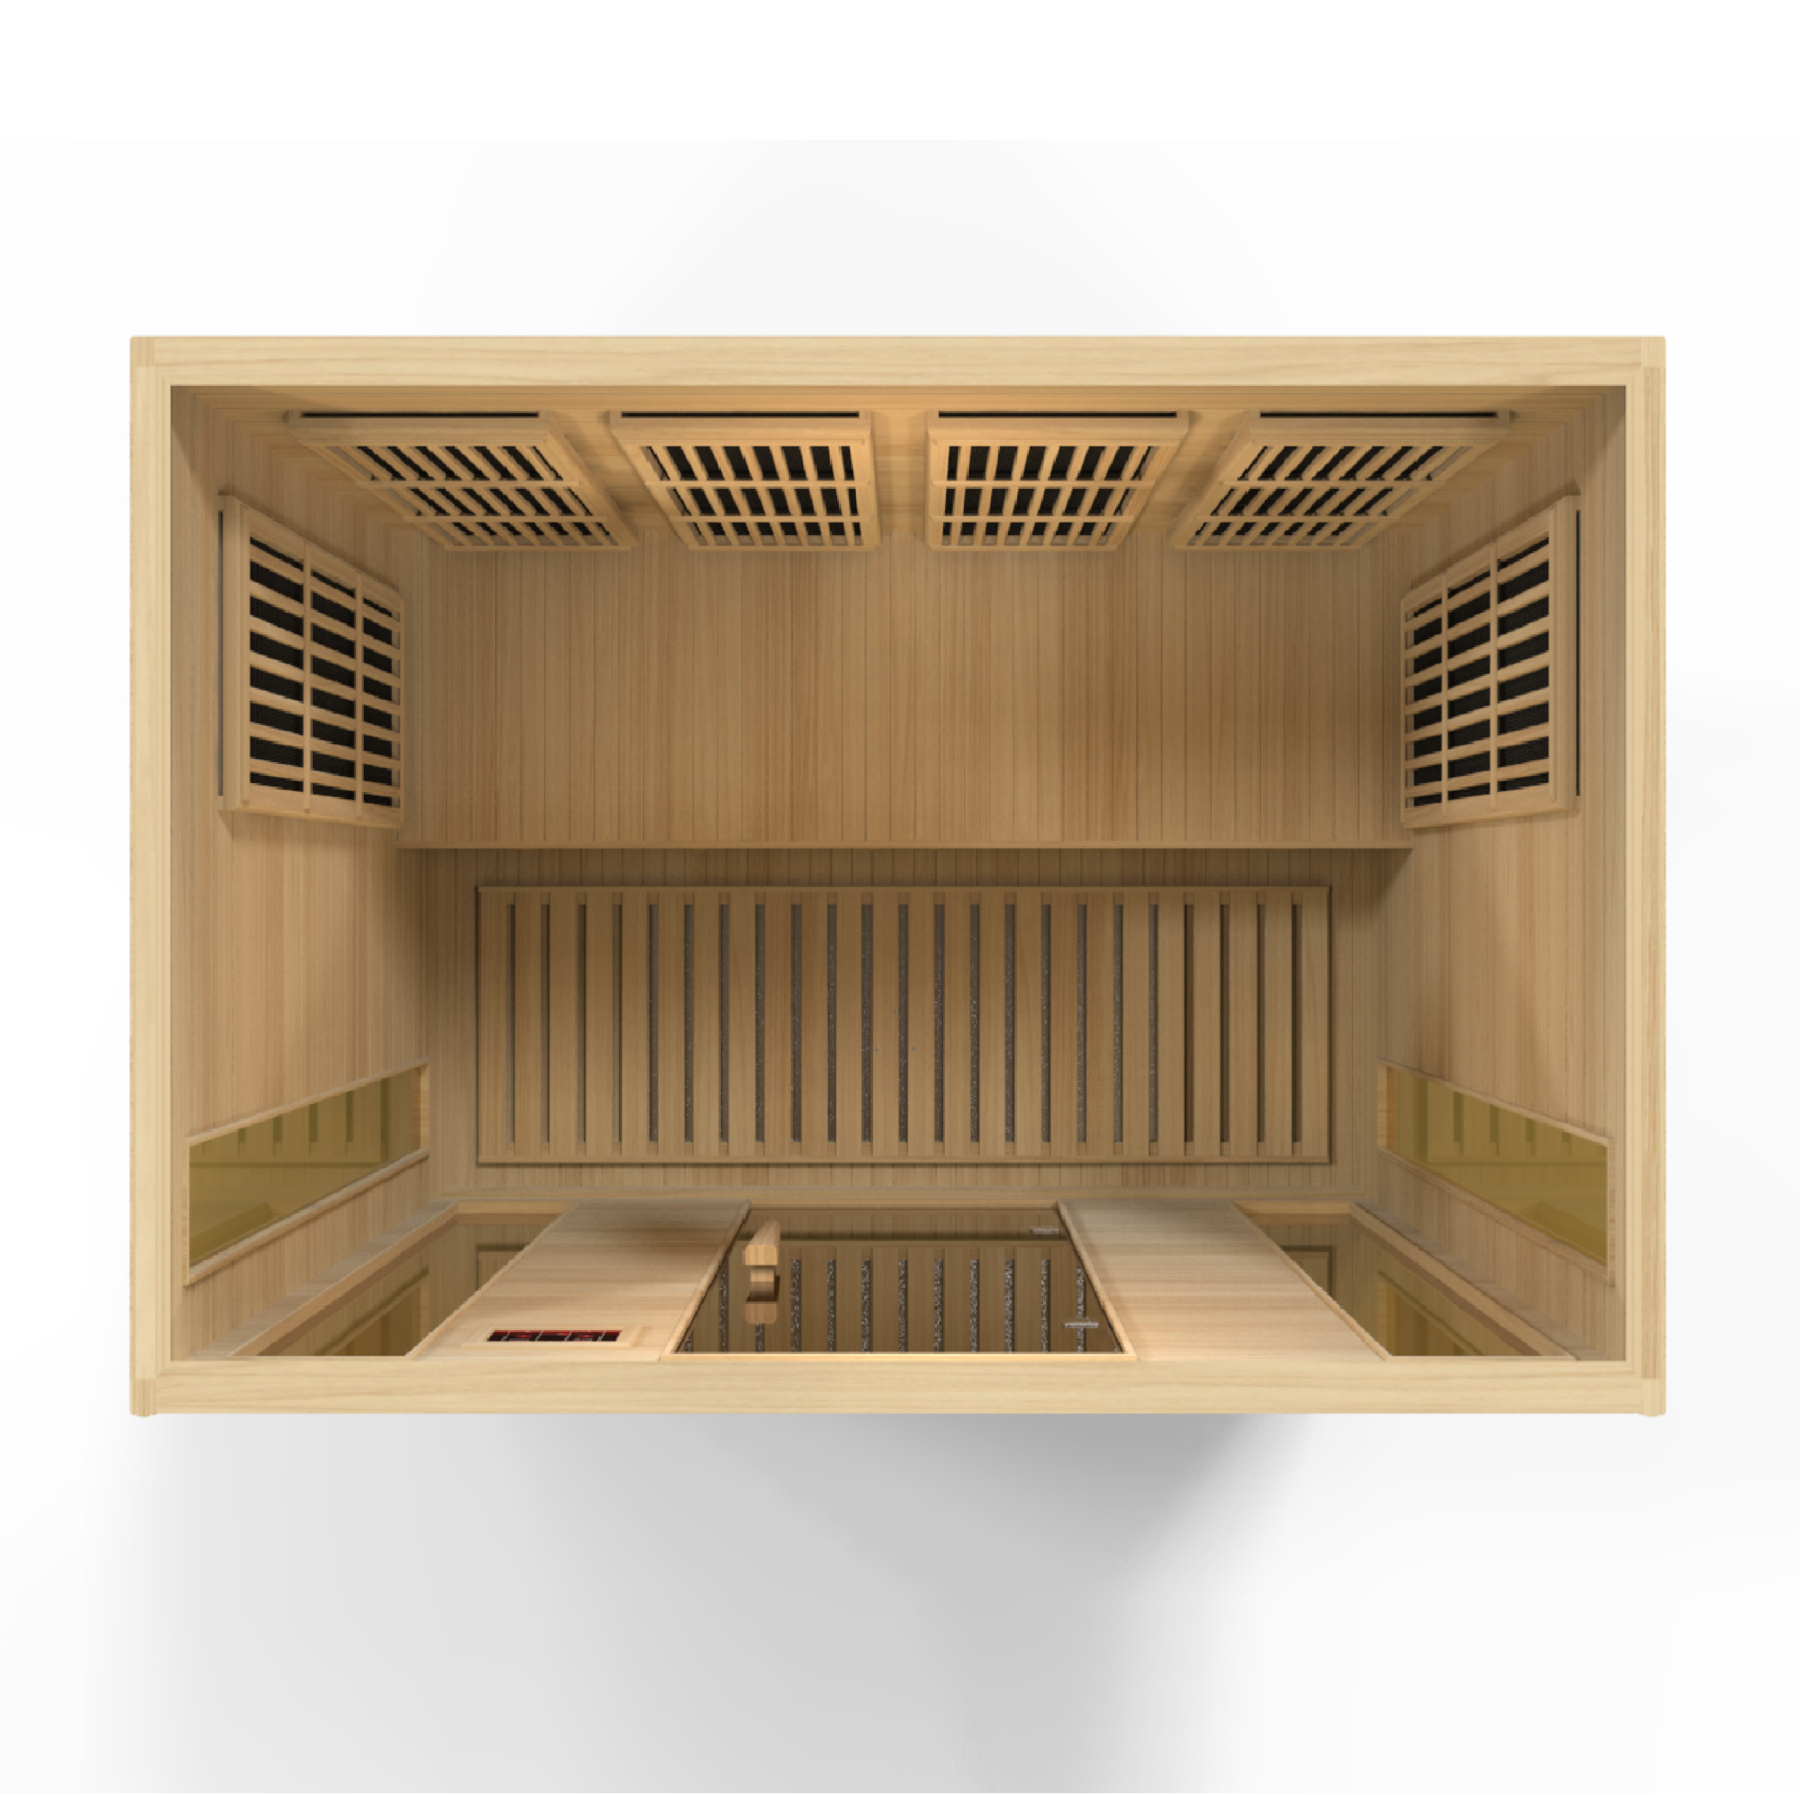 Maxxus 4 Person Indoor Low EMF FAR Infrared Sauna with Canadian Hemlock / IN STOCK